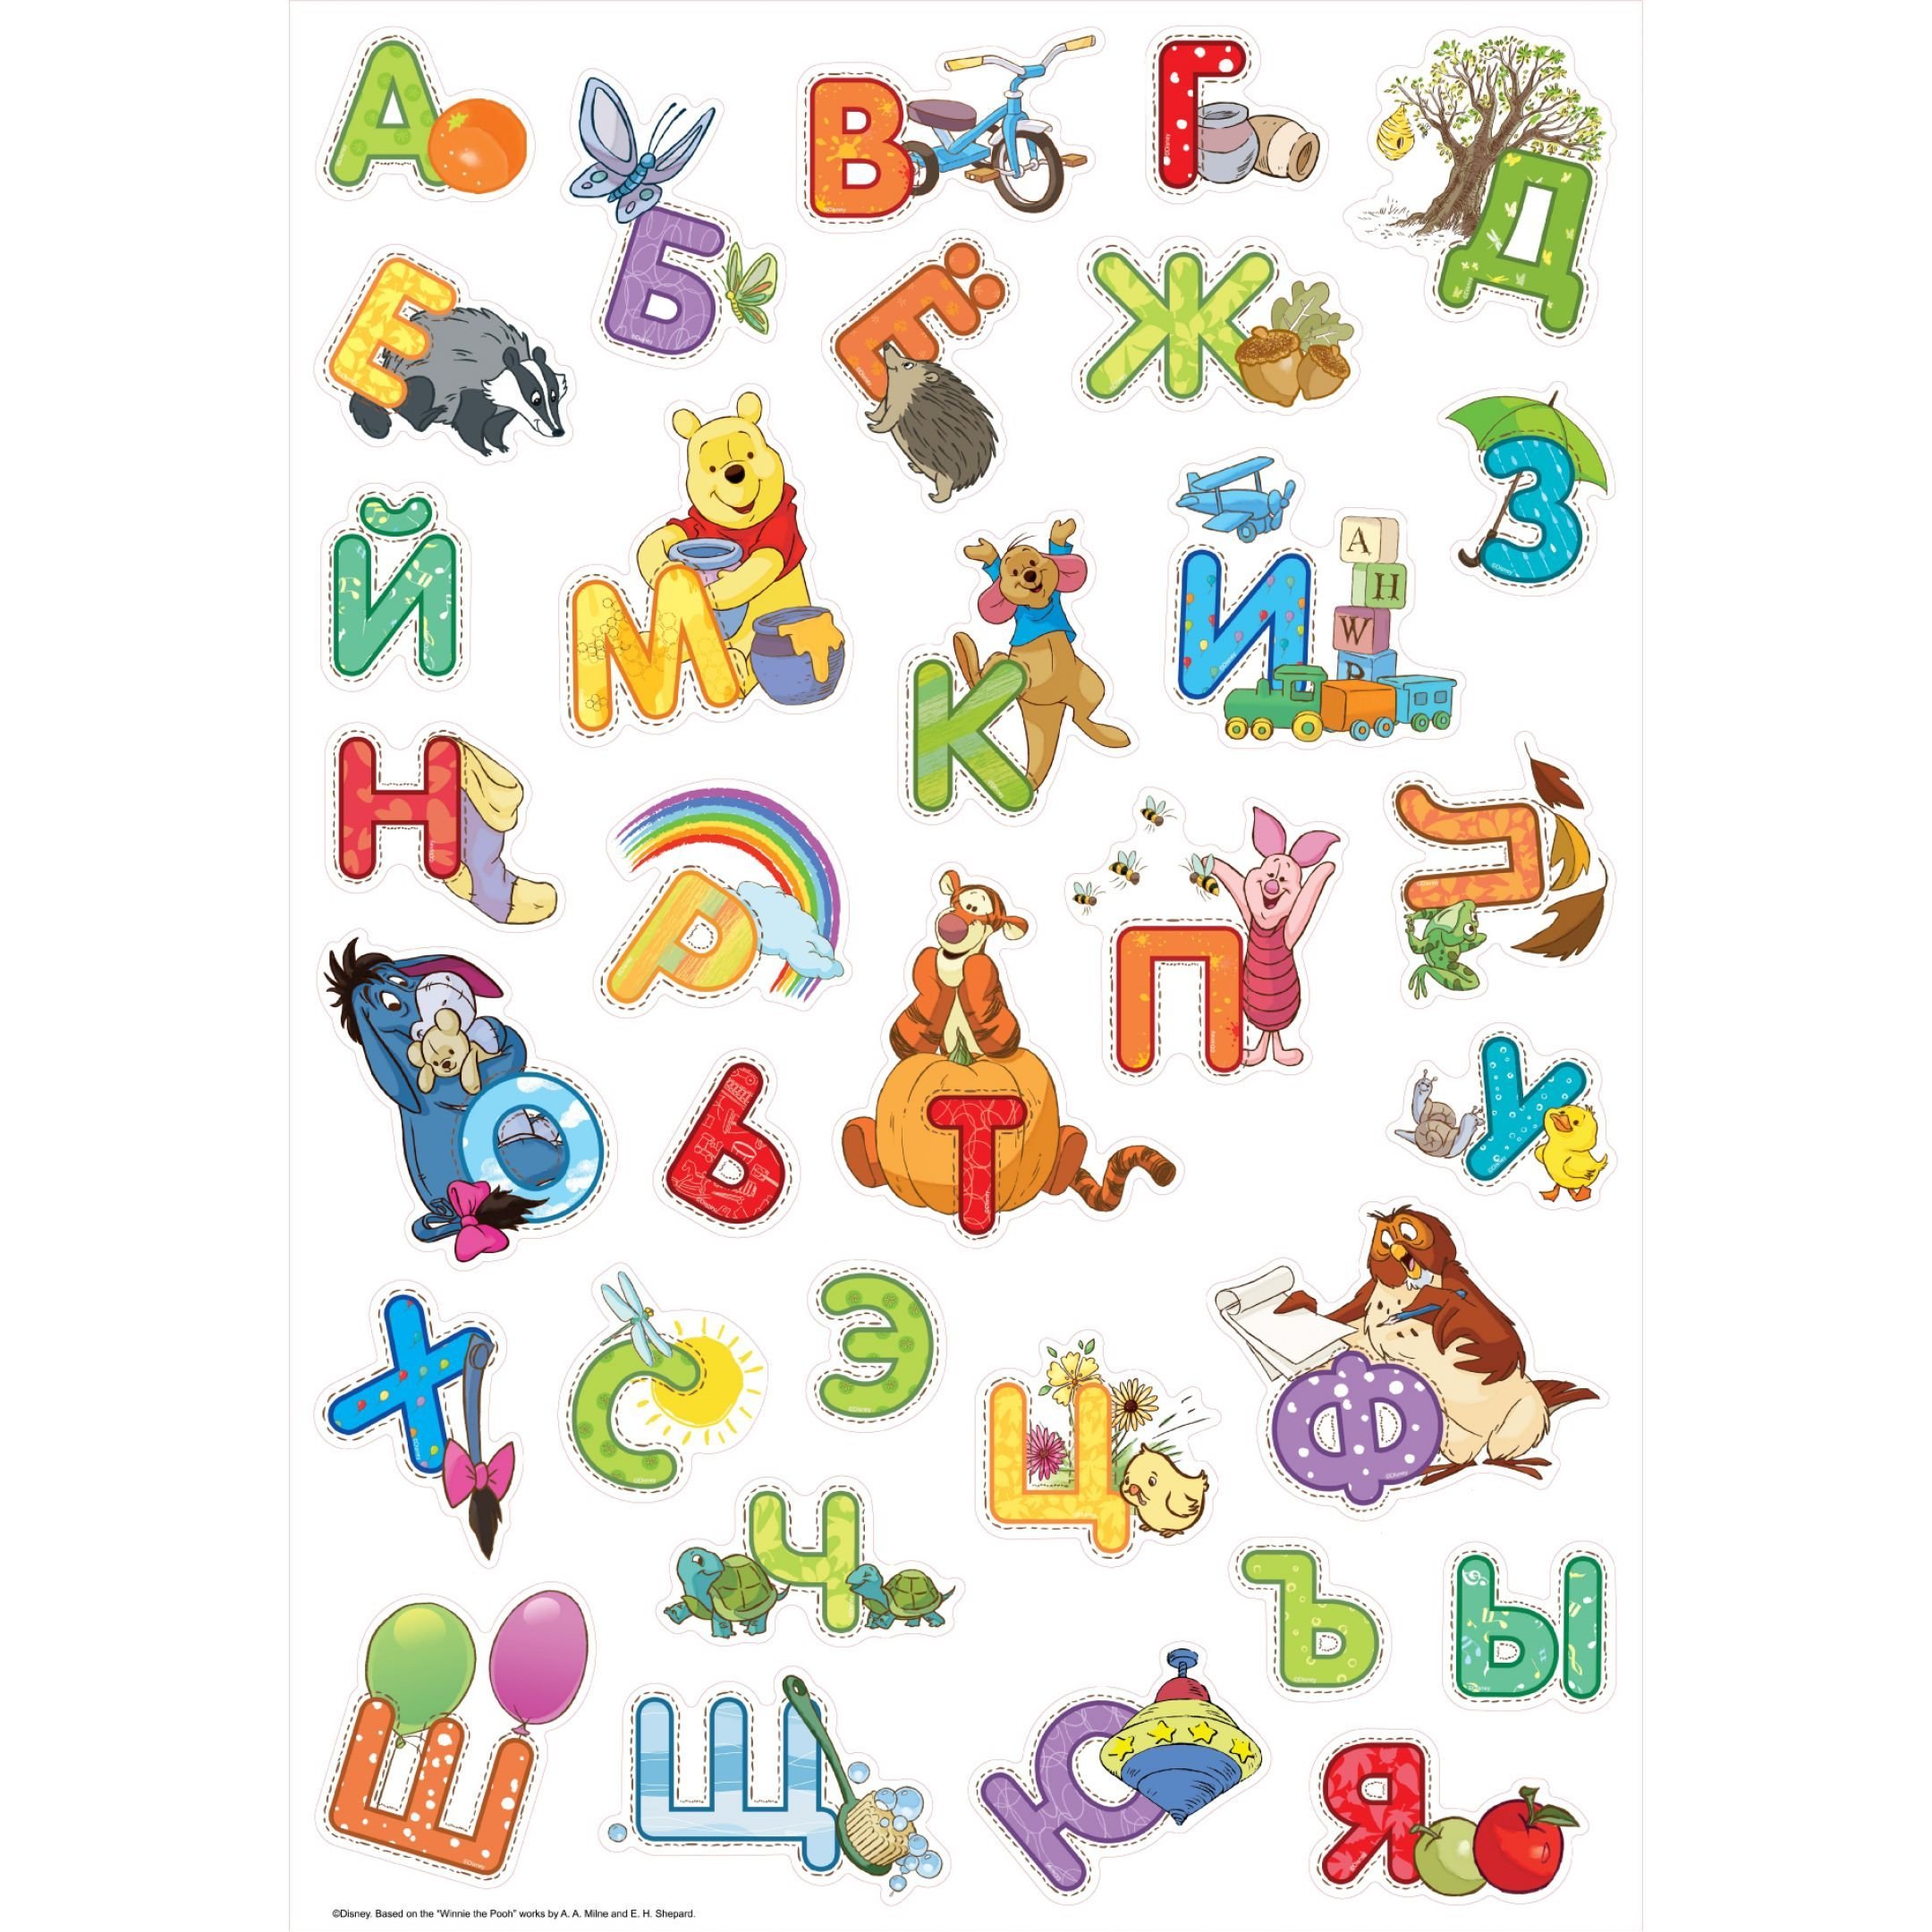 Алфавит русский алфавит в картинках для детей